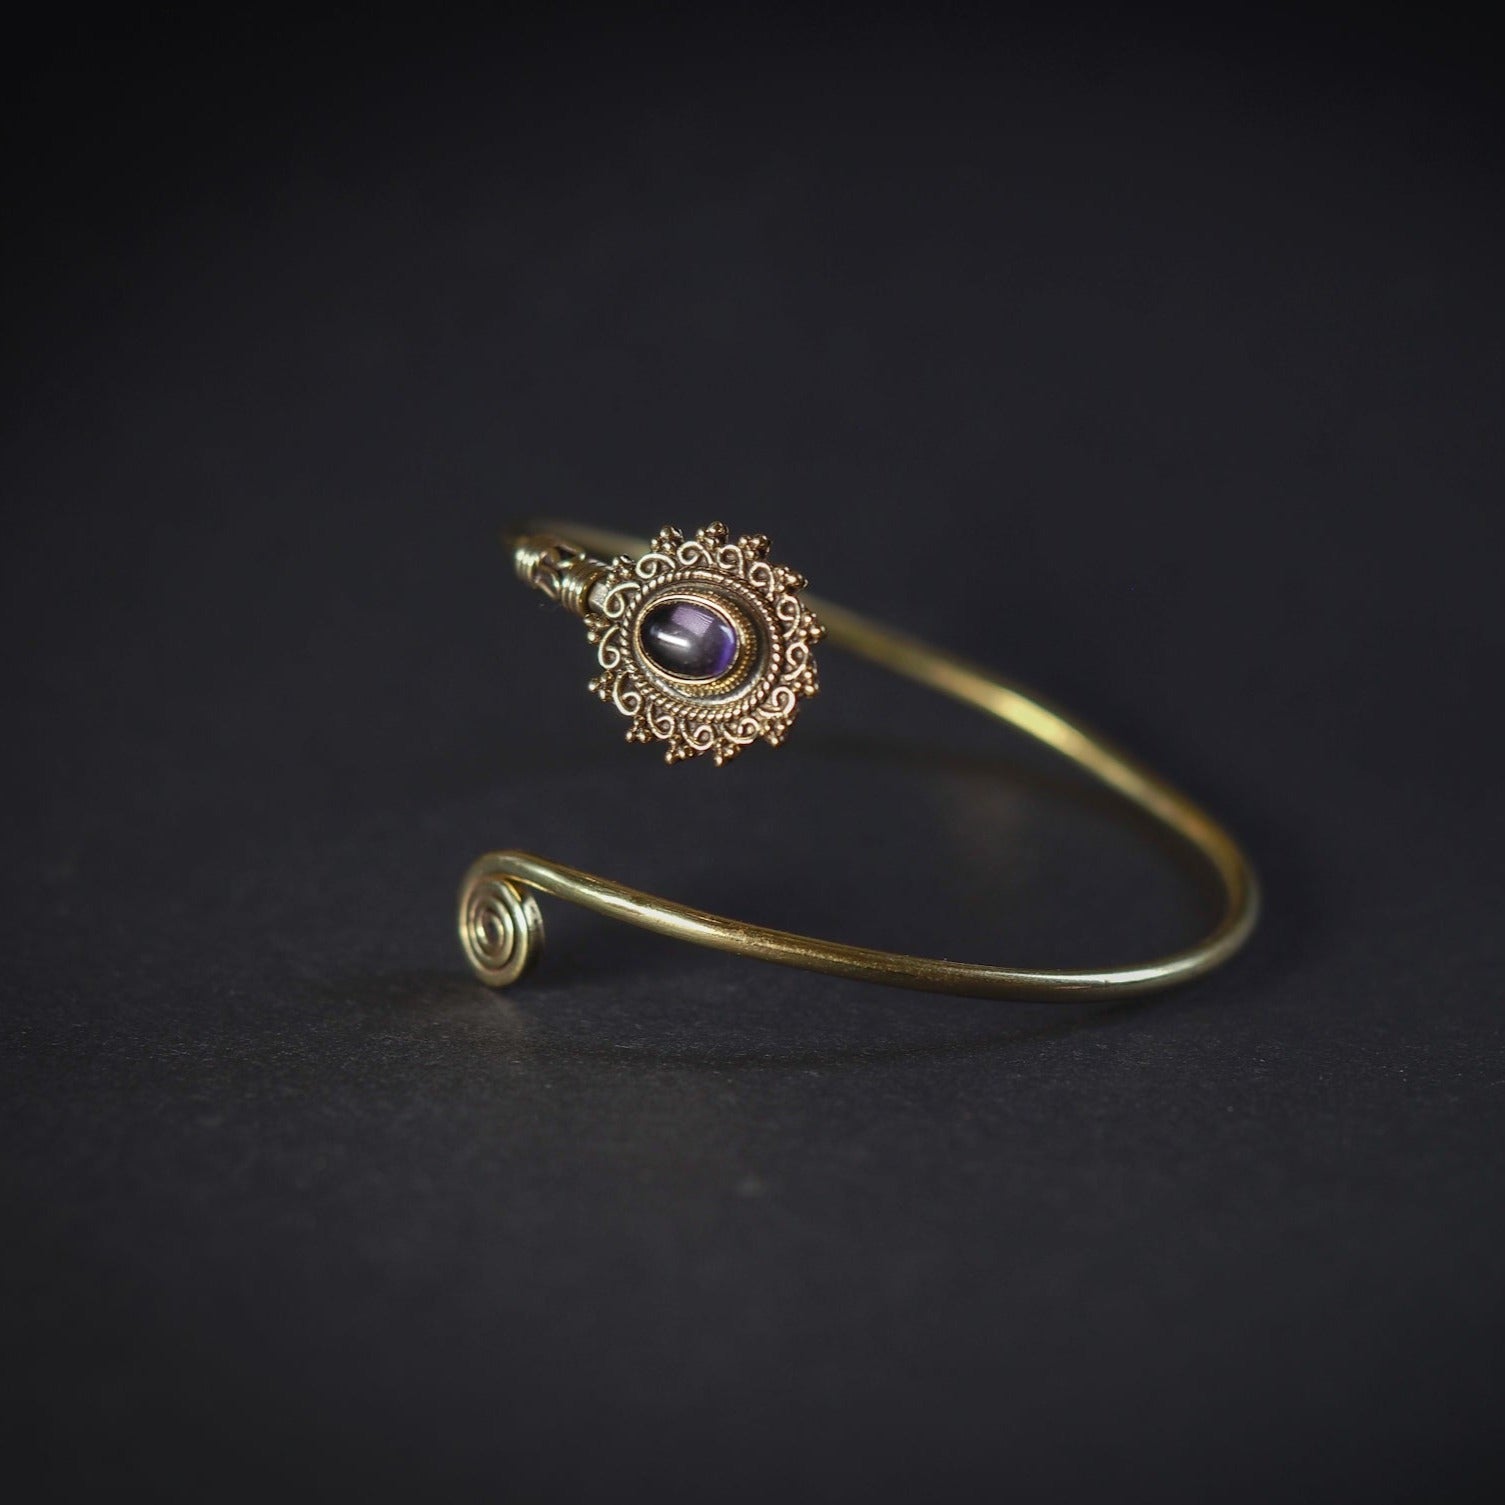 Oval Semi-precious stone bracelet